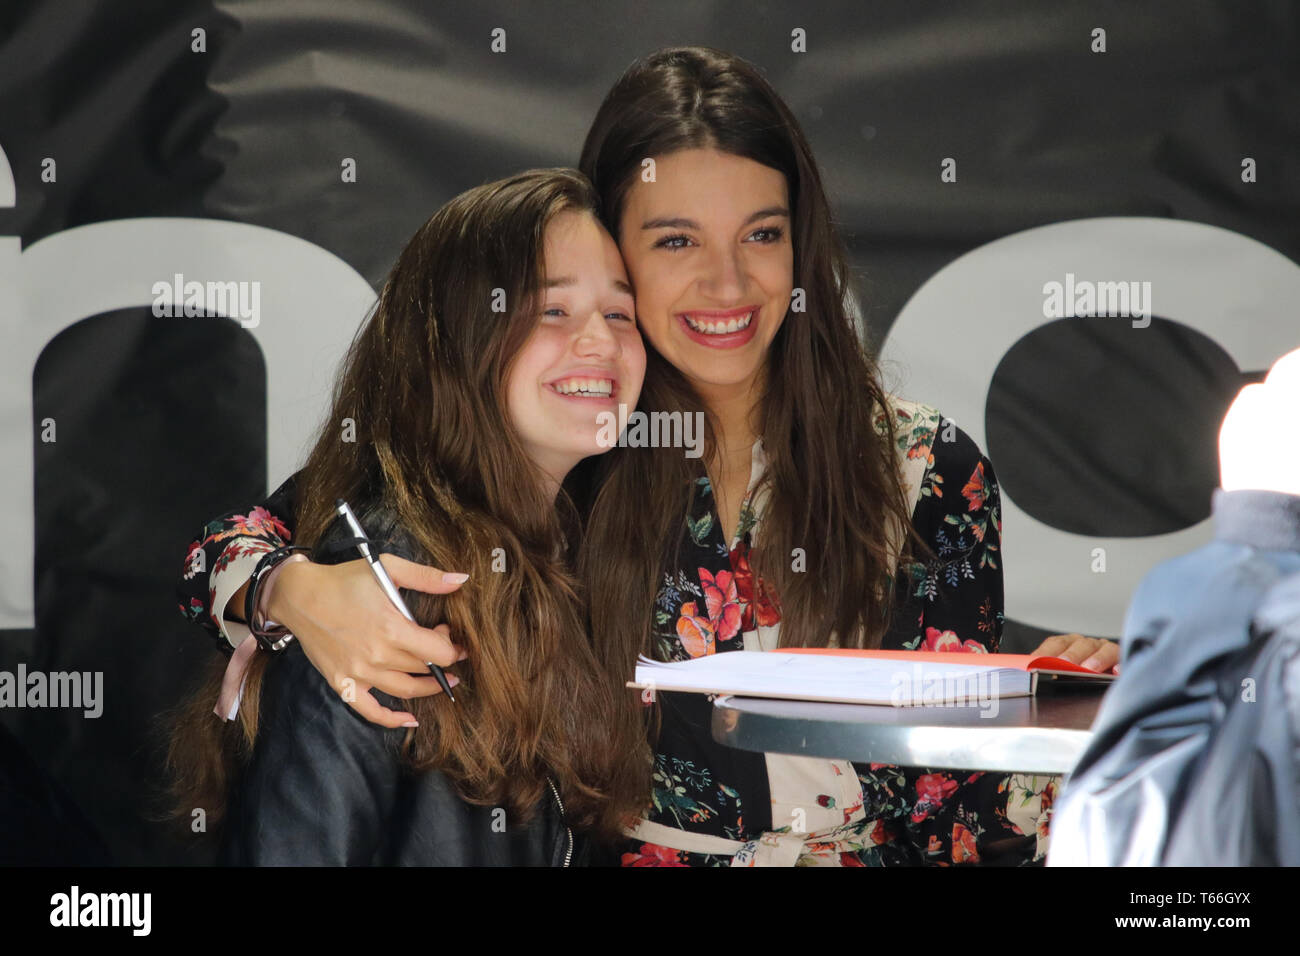 Ana Guerra signs books at her book signing event in Barcelona. Ana Guerra firma de libros en Barcelona. Firmando Con Una Sonrisa entre fans. Stock Photo